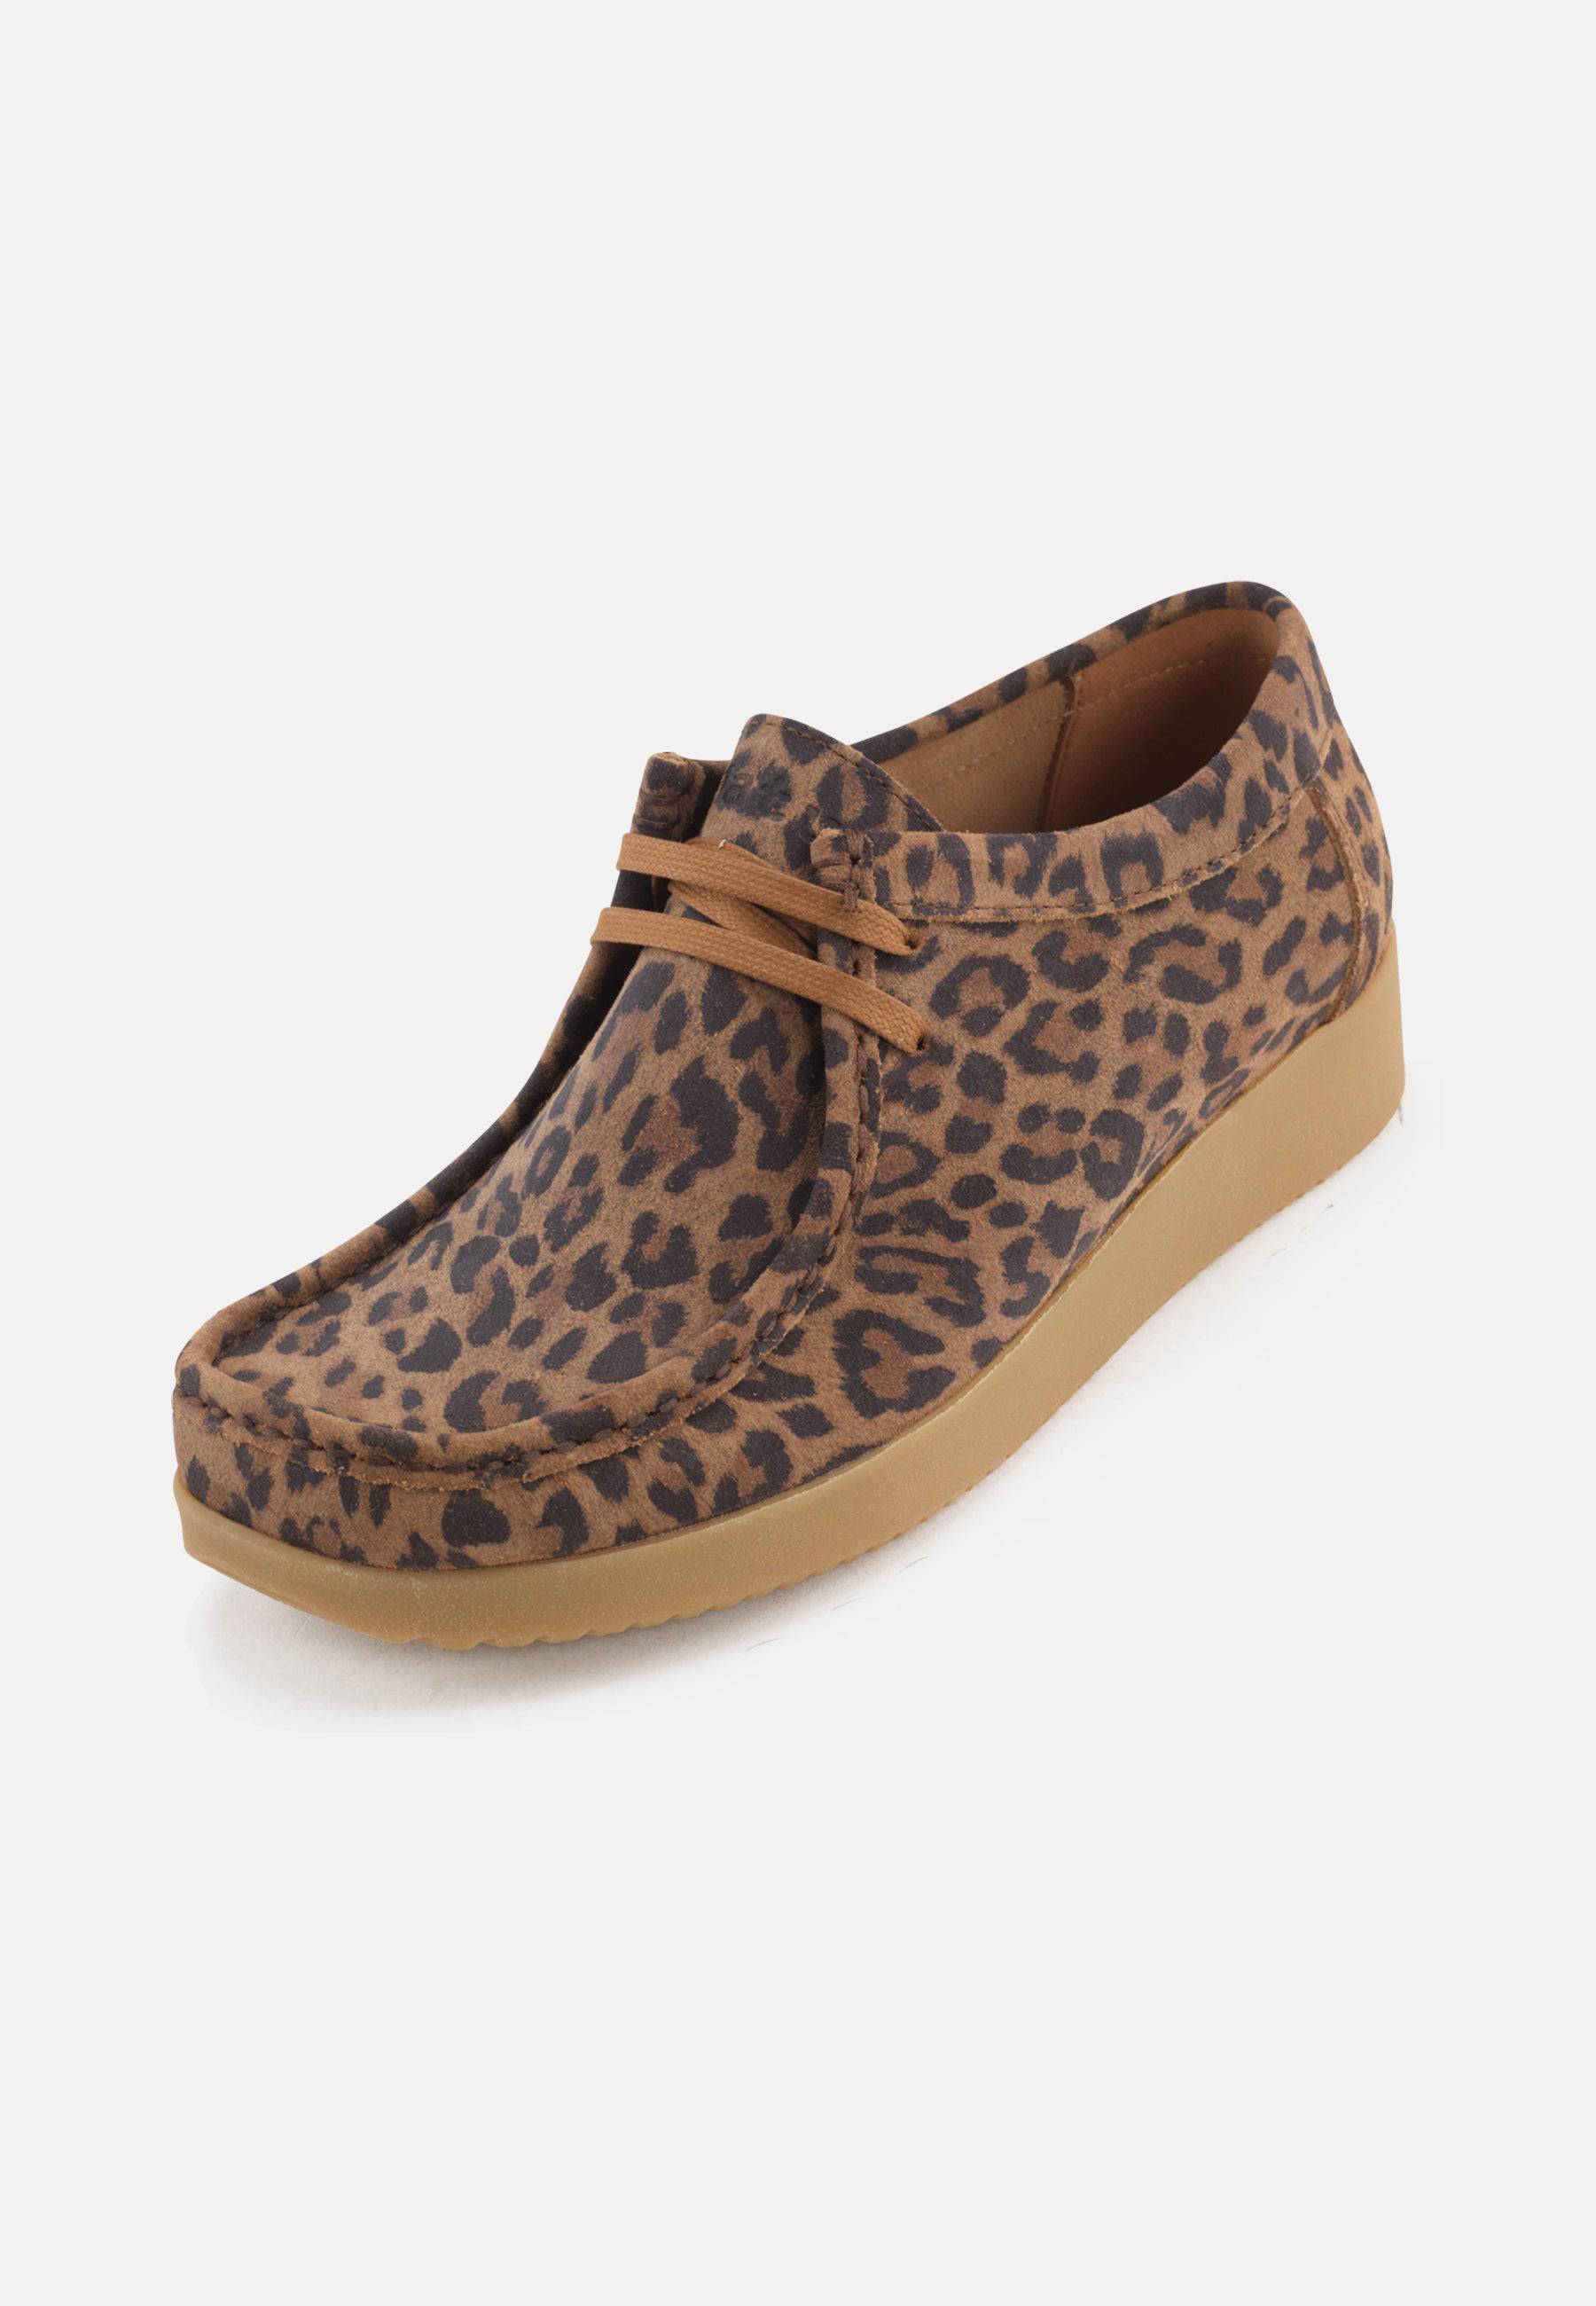 Alba Shoes Suede Print - Leopard